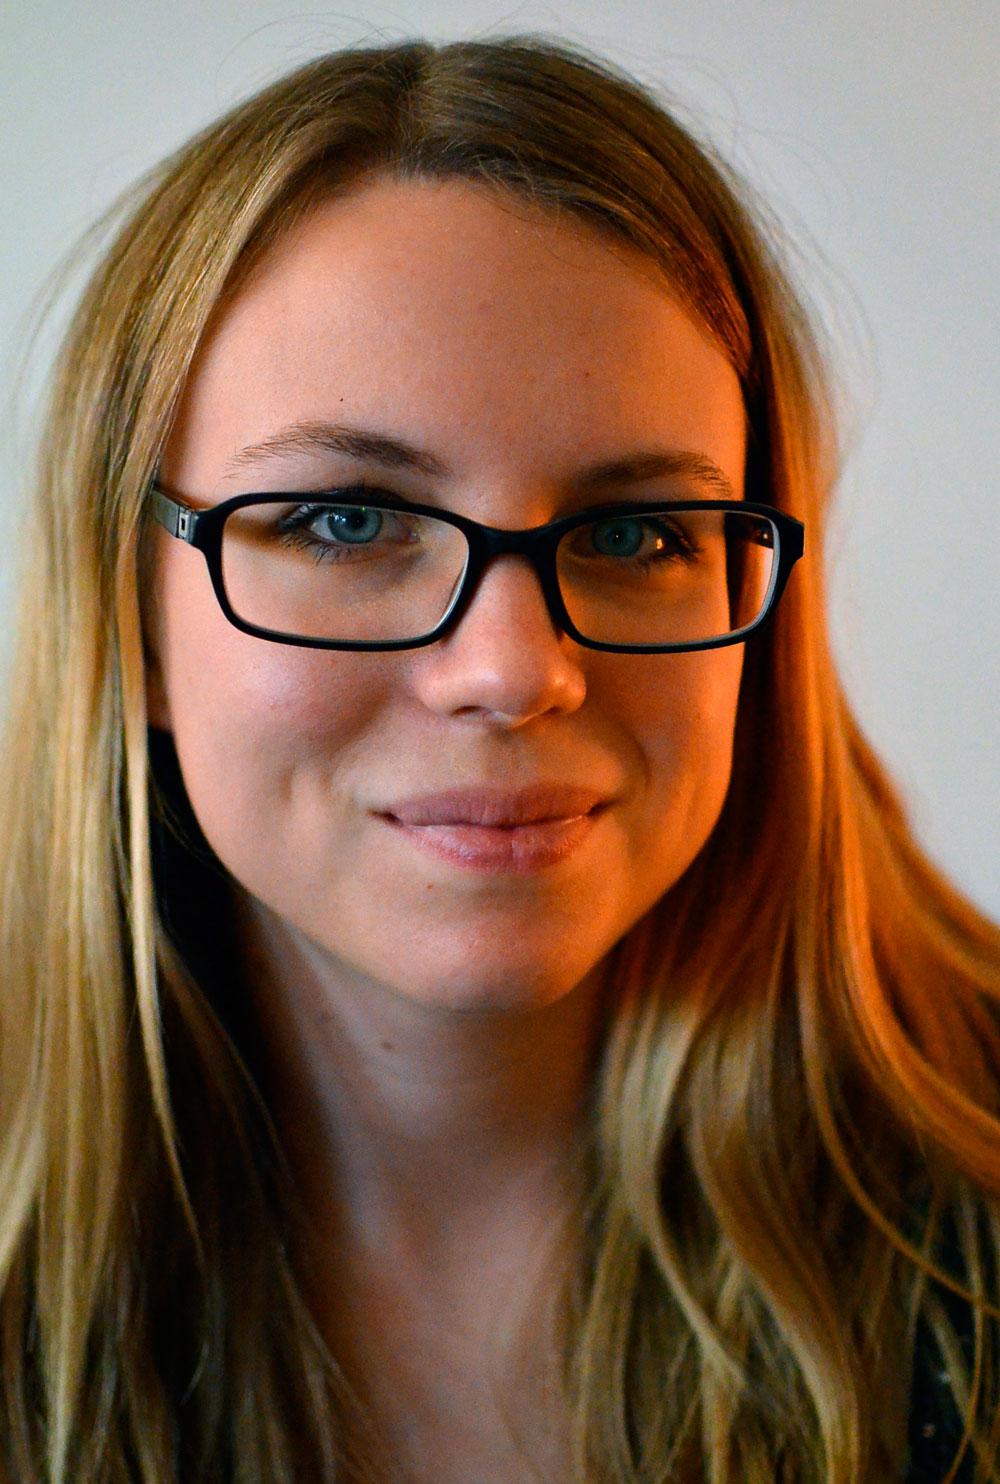 Studenten Anna Lavfors, 26, är en tvåbarnsmamma i Stockholm som pluggar till socionom och driver bloggen "Allt om barnvagnar" samt gruppen "Barnvagnar" på Facebook.